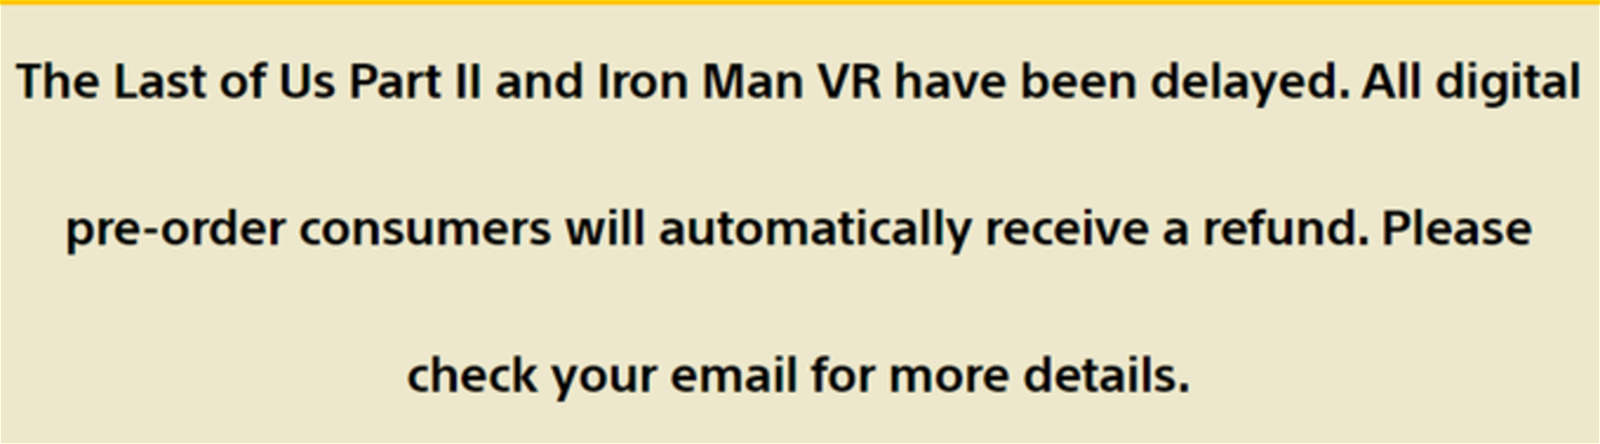 PlayStation devolverá el dinero a los que reservaron The Last of Us Parte II e Iron Man VR de forma digital